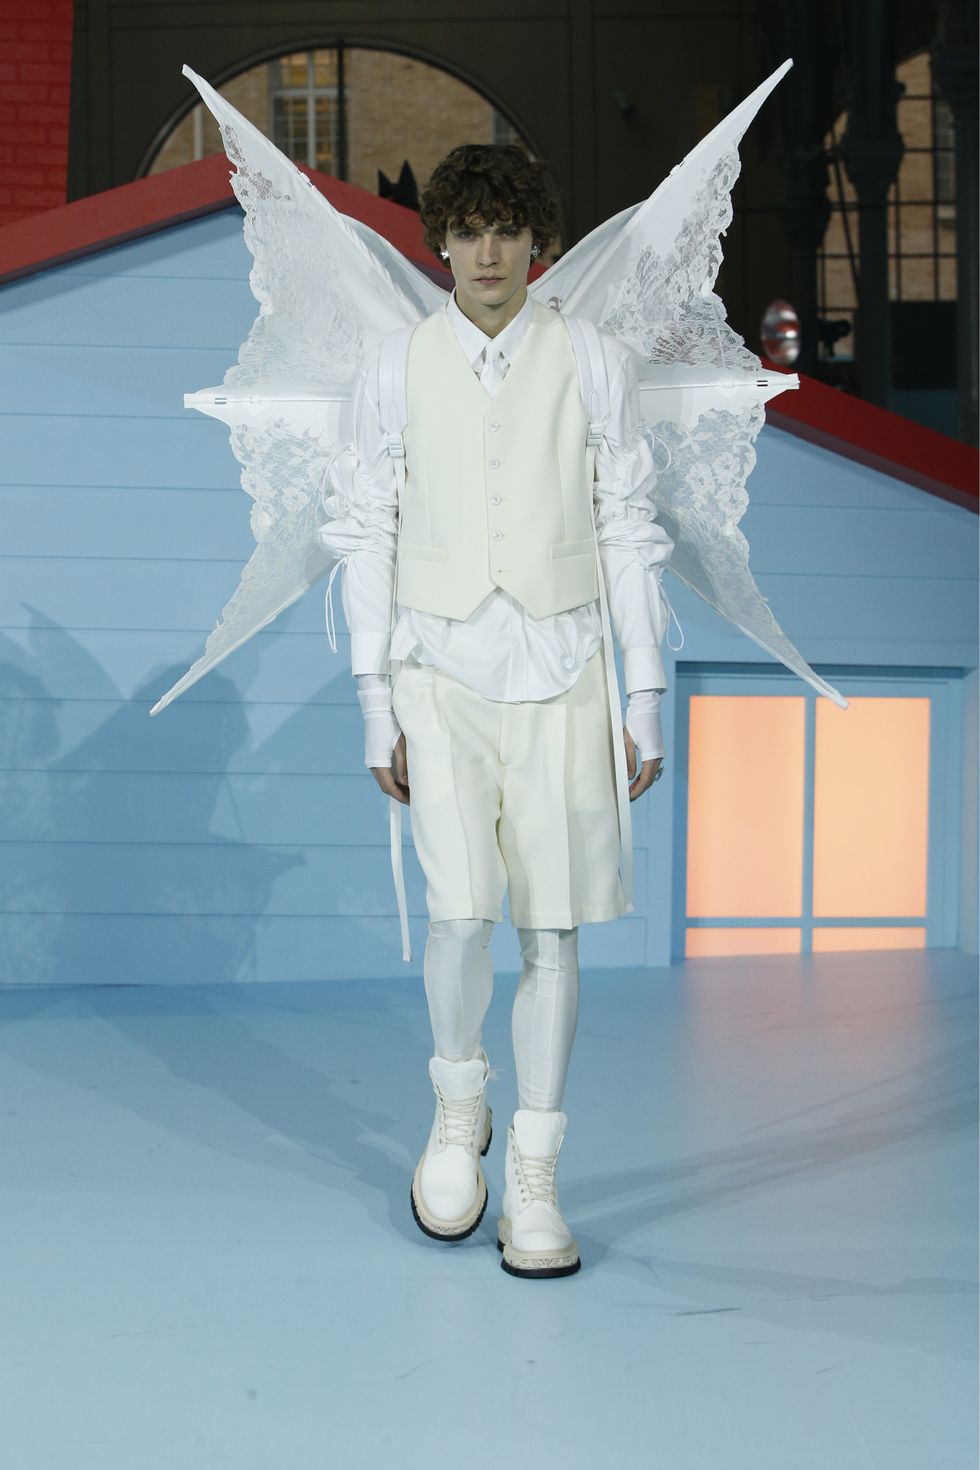 Espíritu de Virgil Abloh vive en desfile de Louis Vuitton